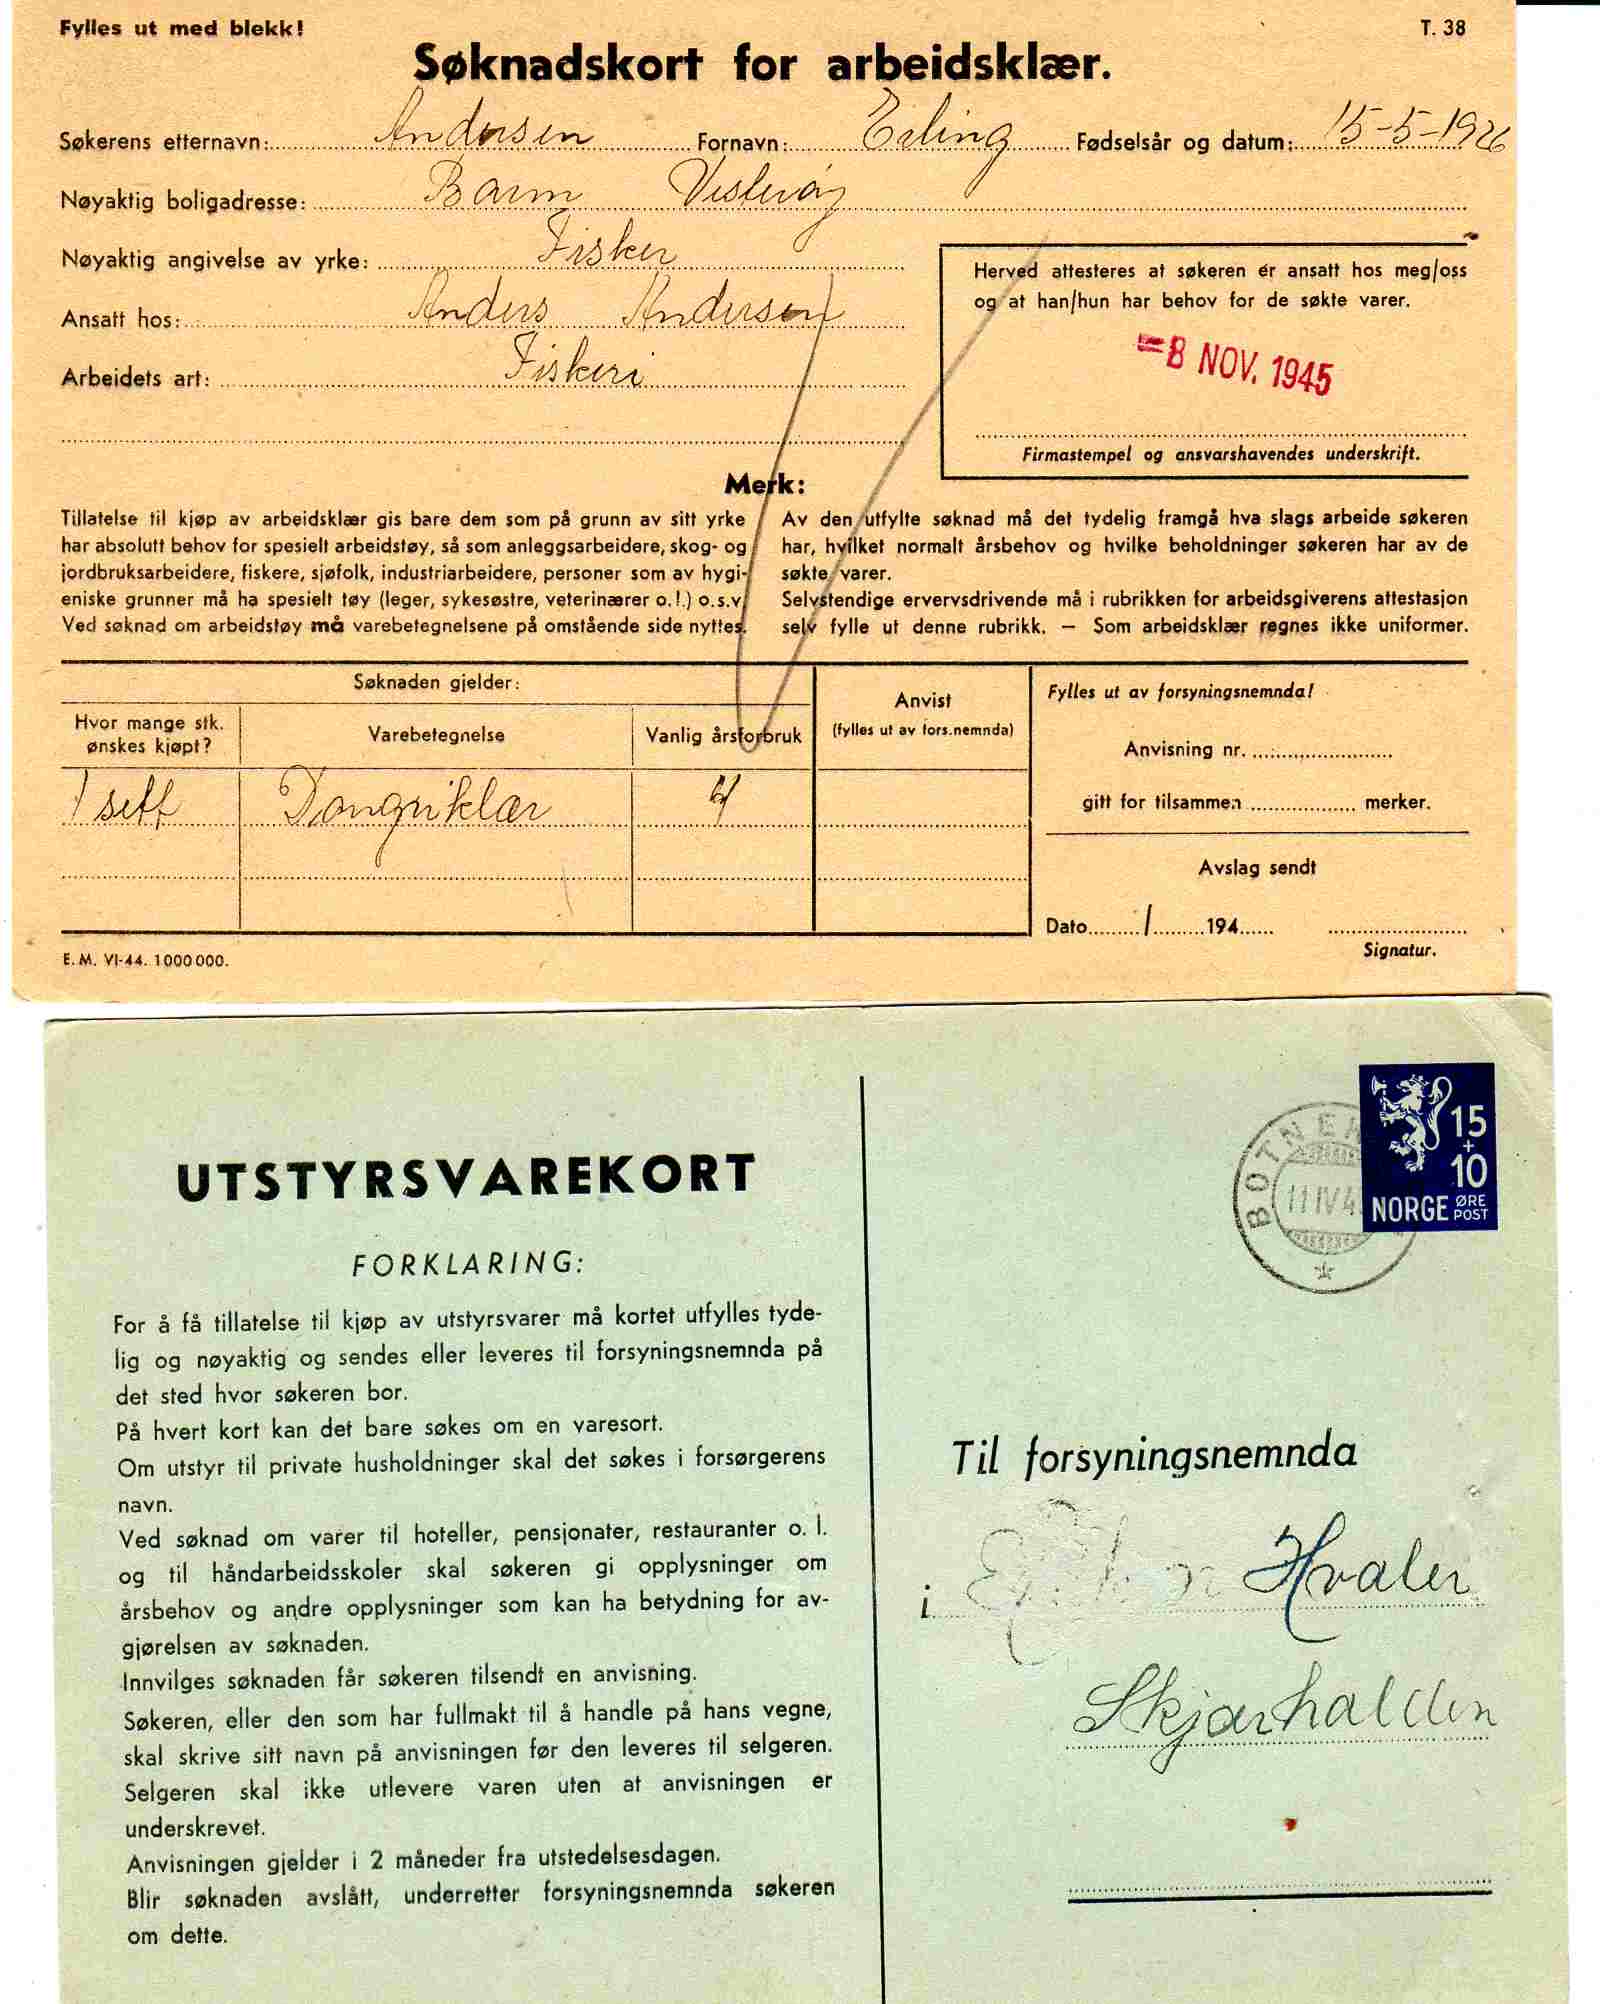 Utstyrsvarekort(st Botneskulen-Fagerli 1946)/Søknad for arbeidsklær(st vesterøy 1945)